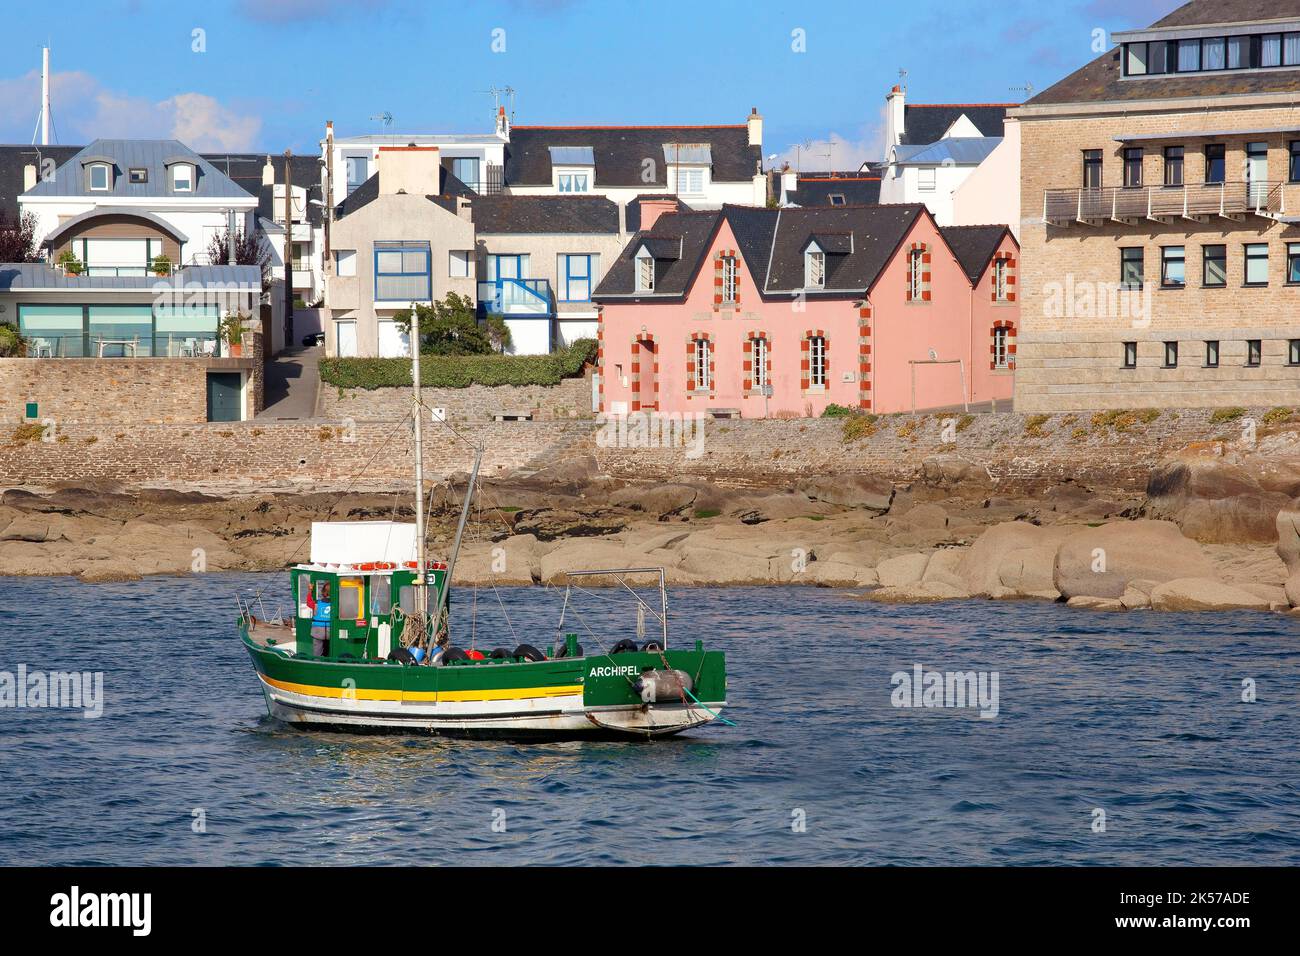 France, Finistère (29), bateau de pêche sur le port de Concarneau, la Ville Close, cité fortifiée des XVe et XVIe siècles remaniée par Vauban au XVIIe siècle Stock Photo